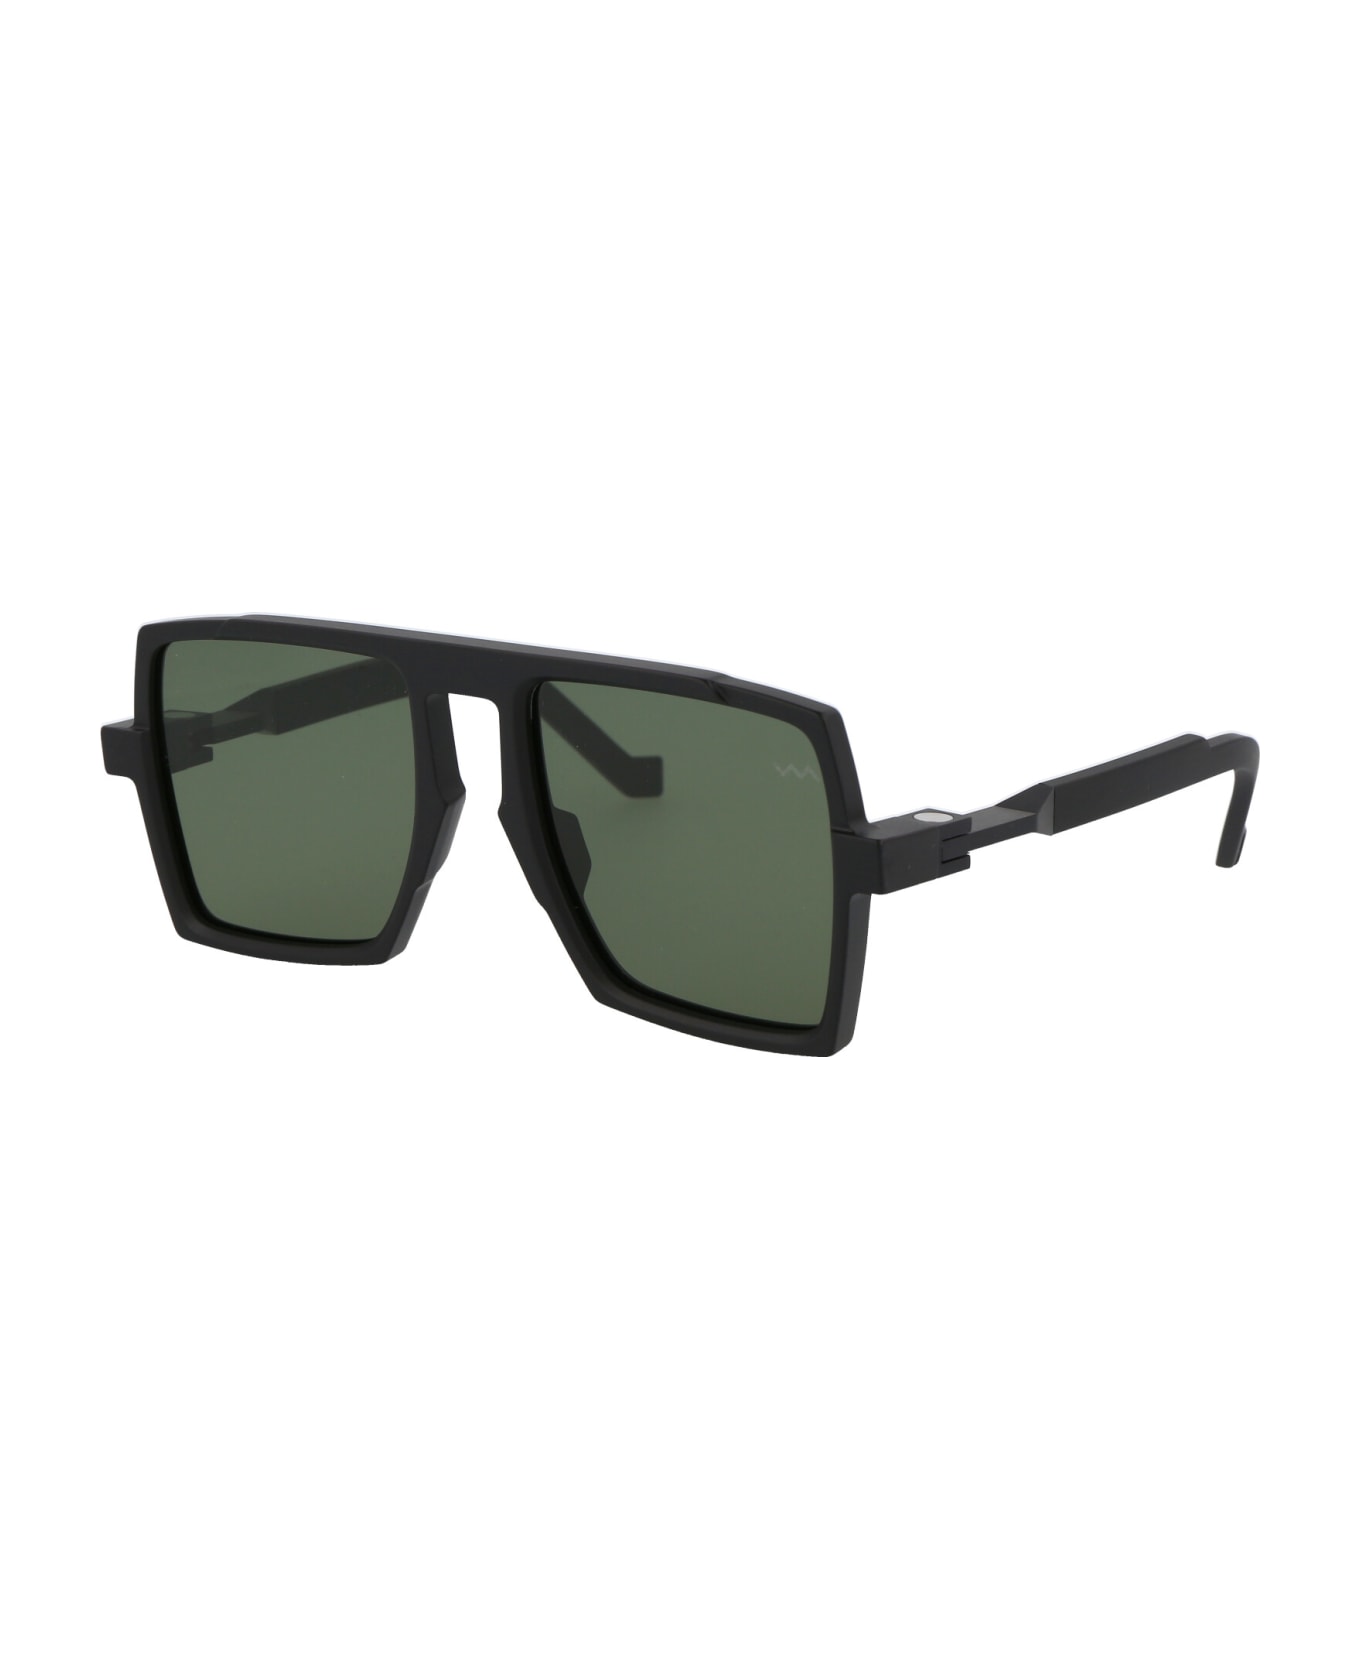 VAVA Bl0026 Sunglasses - Montblanc tortoiseshell-effect square-frame sunglasses